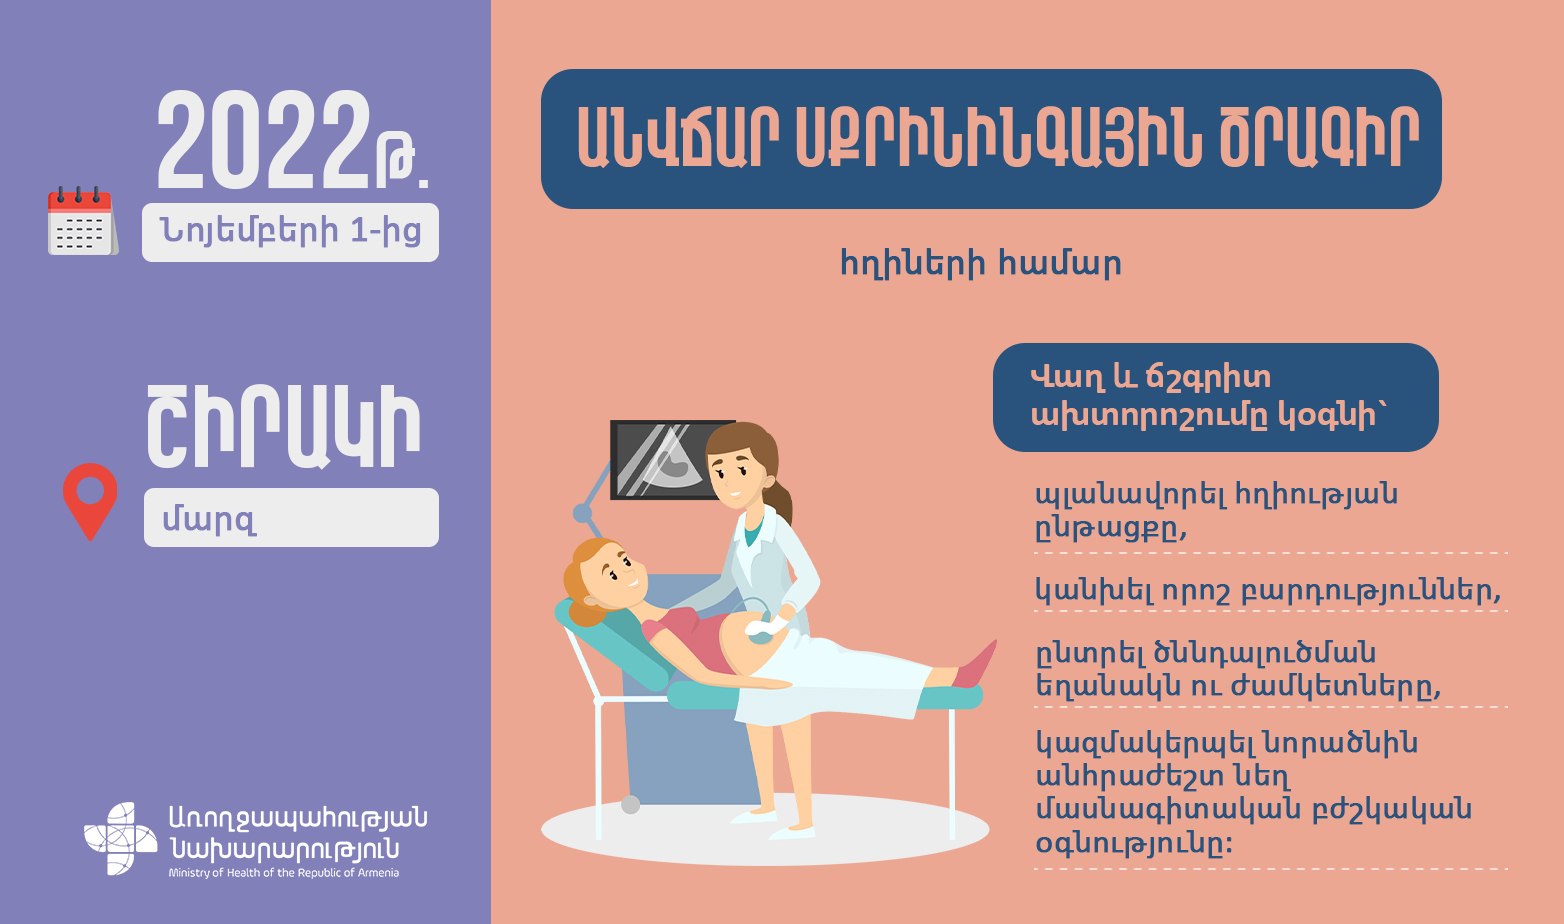 Անվճար սքրինինգային ծրագիր՝ Շիրակի մարզի հղիների համար